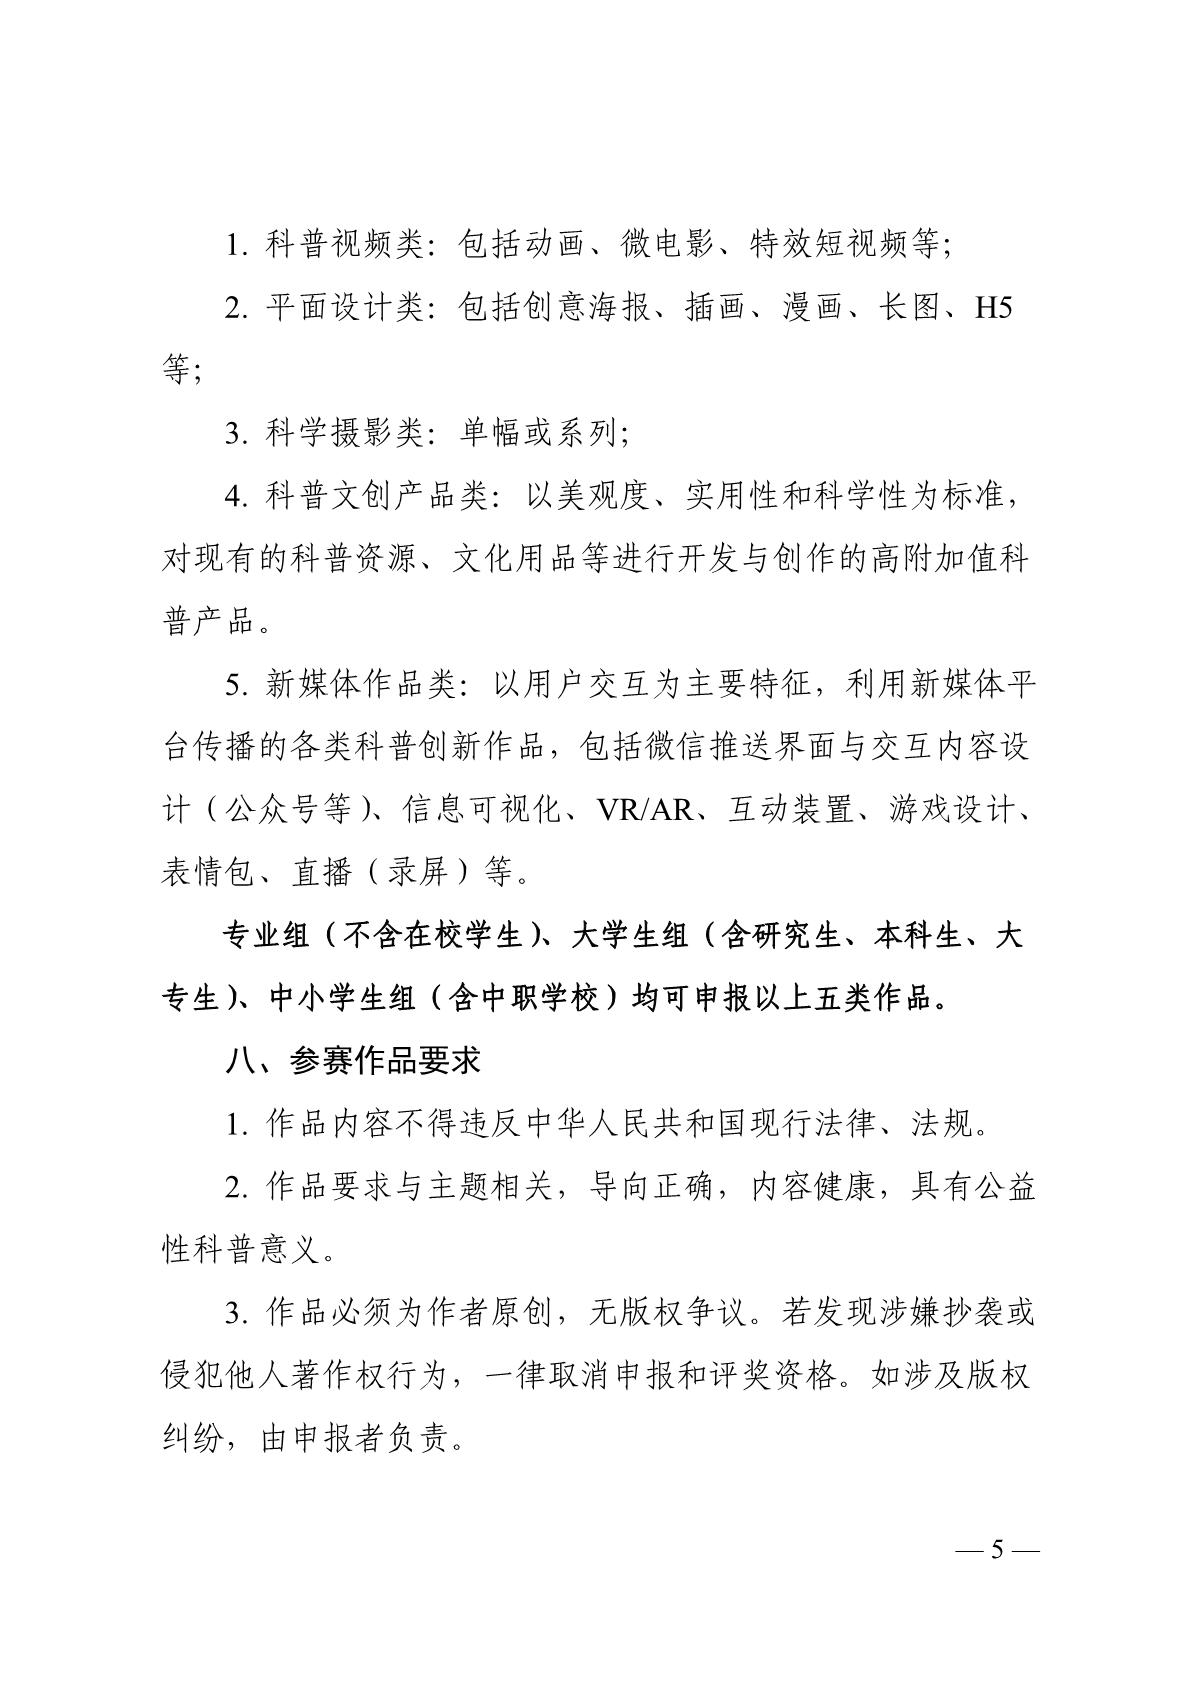 关于组织开展第六届江苏省科普公益作品大赛的通知（苏科协发〔2020〕46号）(1)_5.JPG